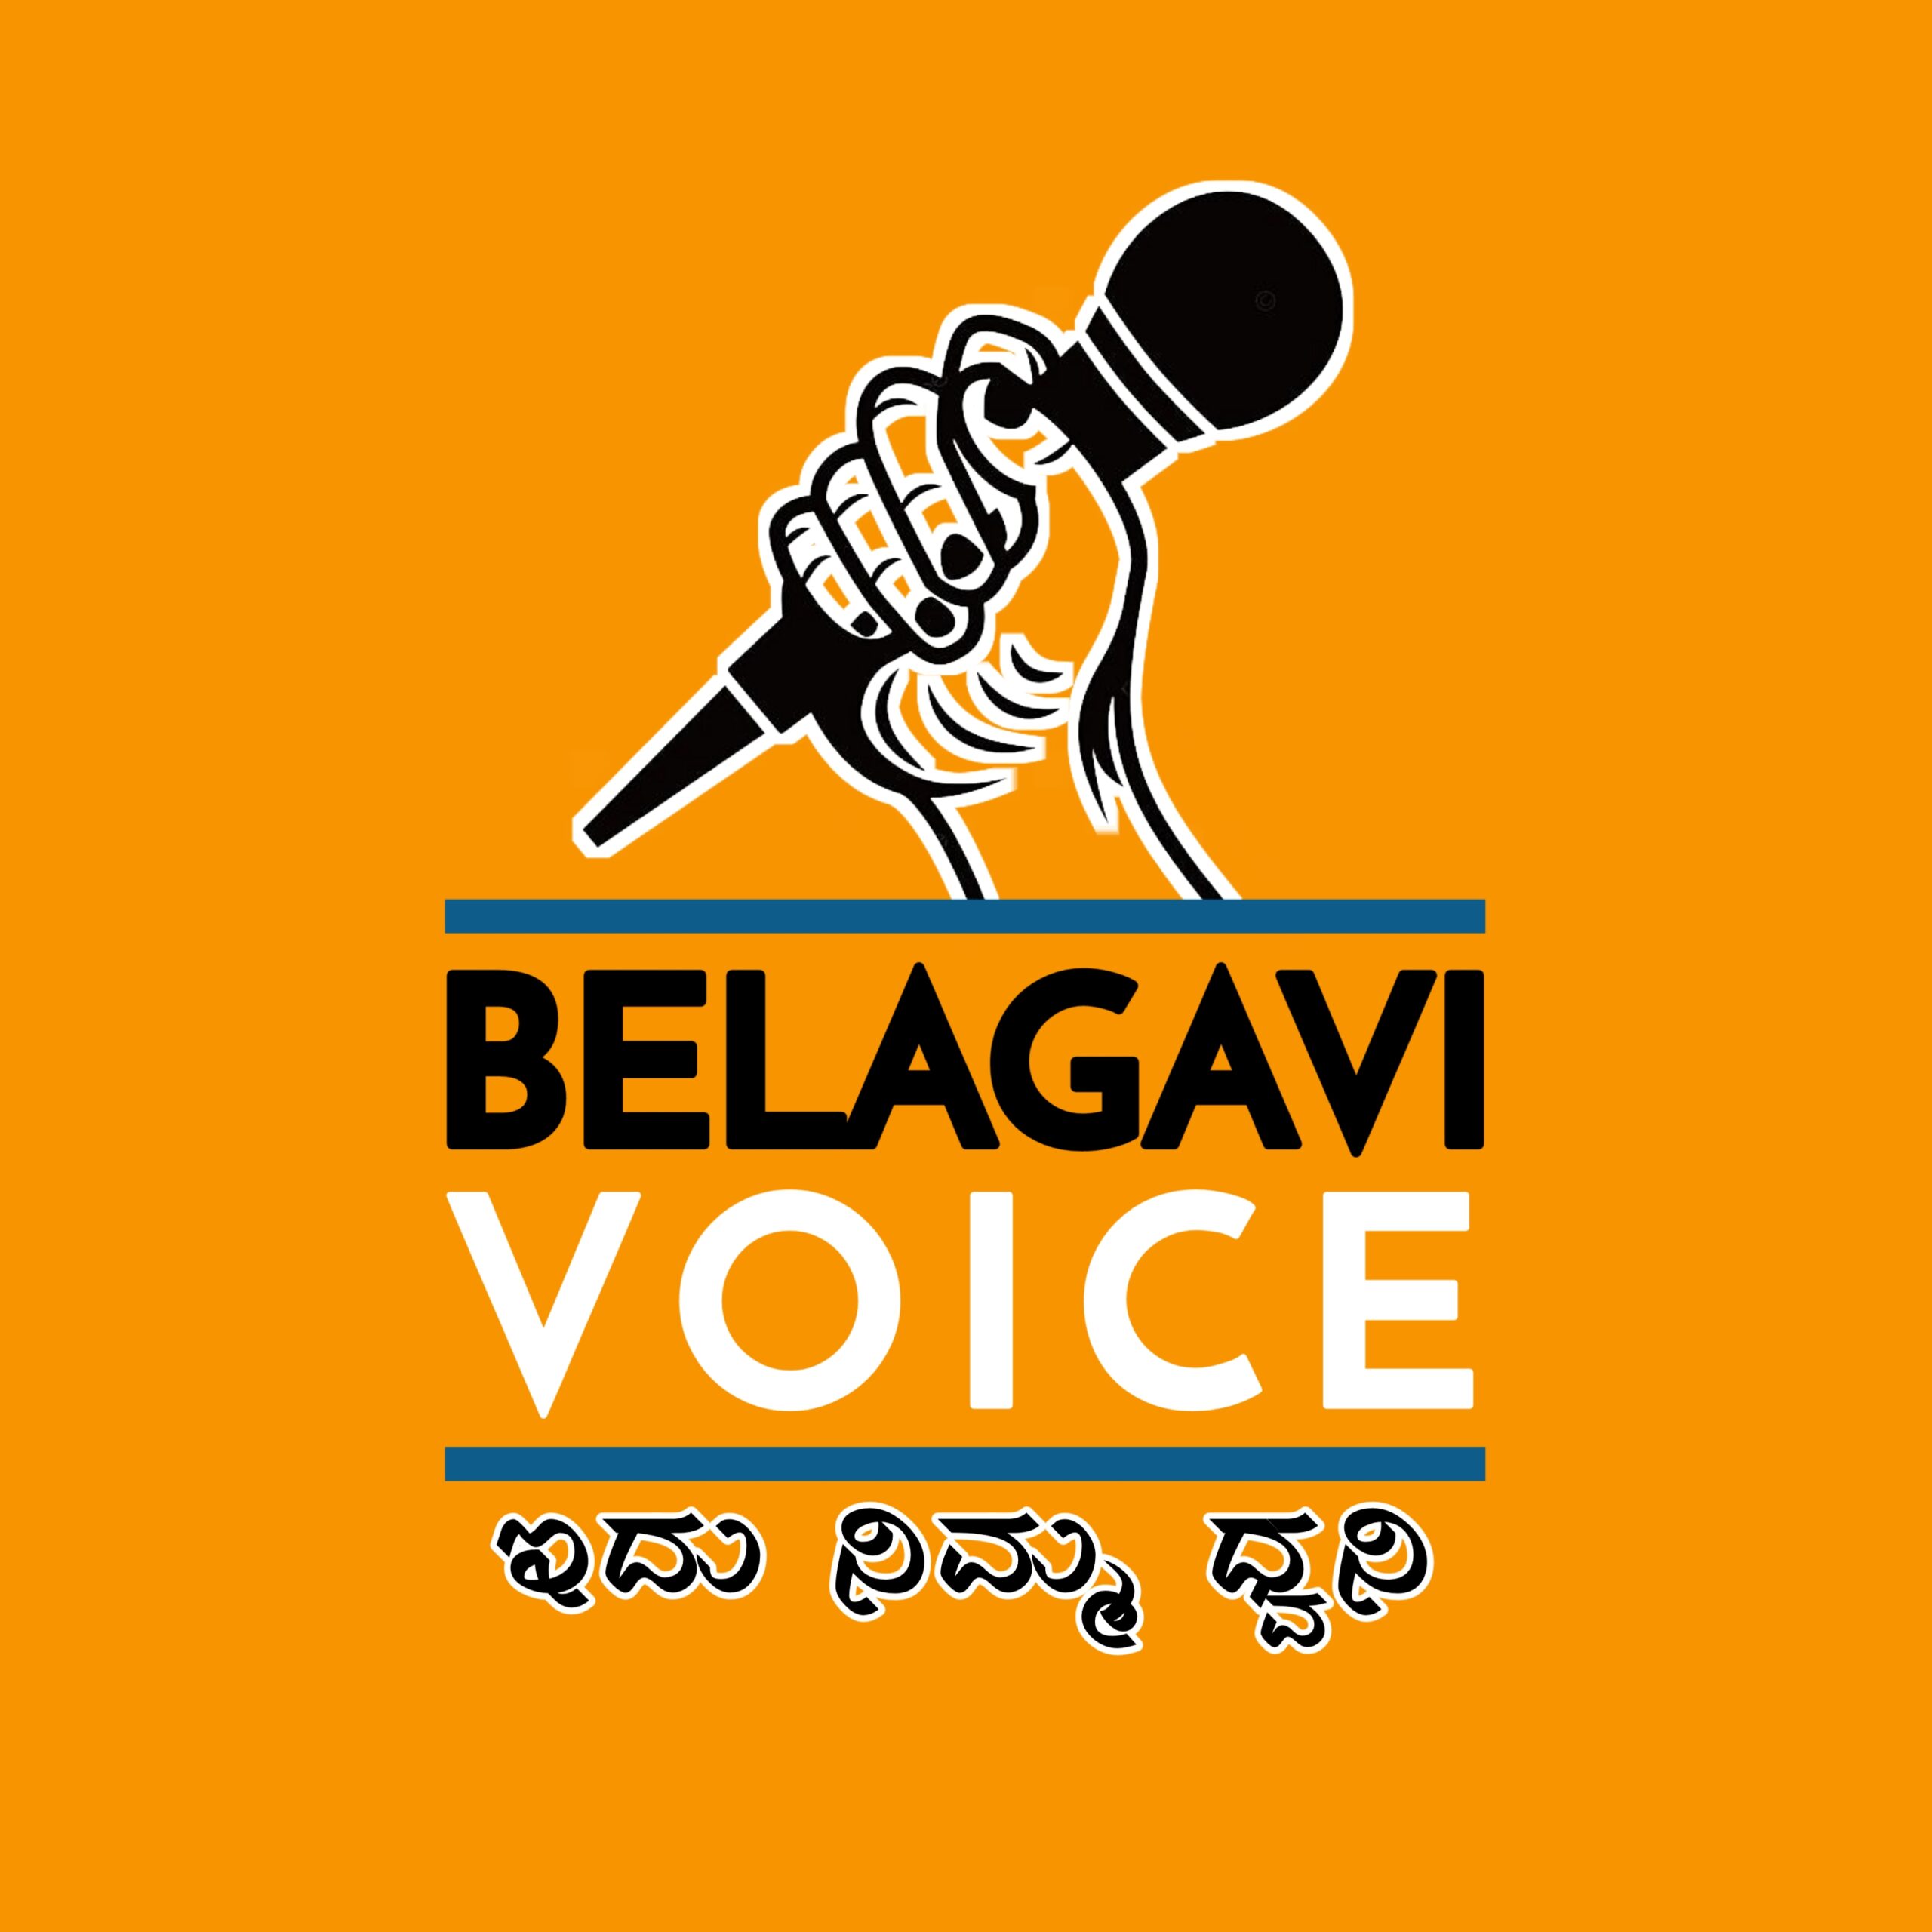 ನೀವು ಪತ್ರಕರ್ತರಾಗಬೇಕೆ Belagavi Voice ನಲ್ಲಿದೆ ಸುವರ್ಣ ಅವಕಾಶ